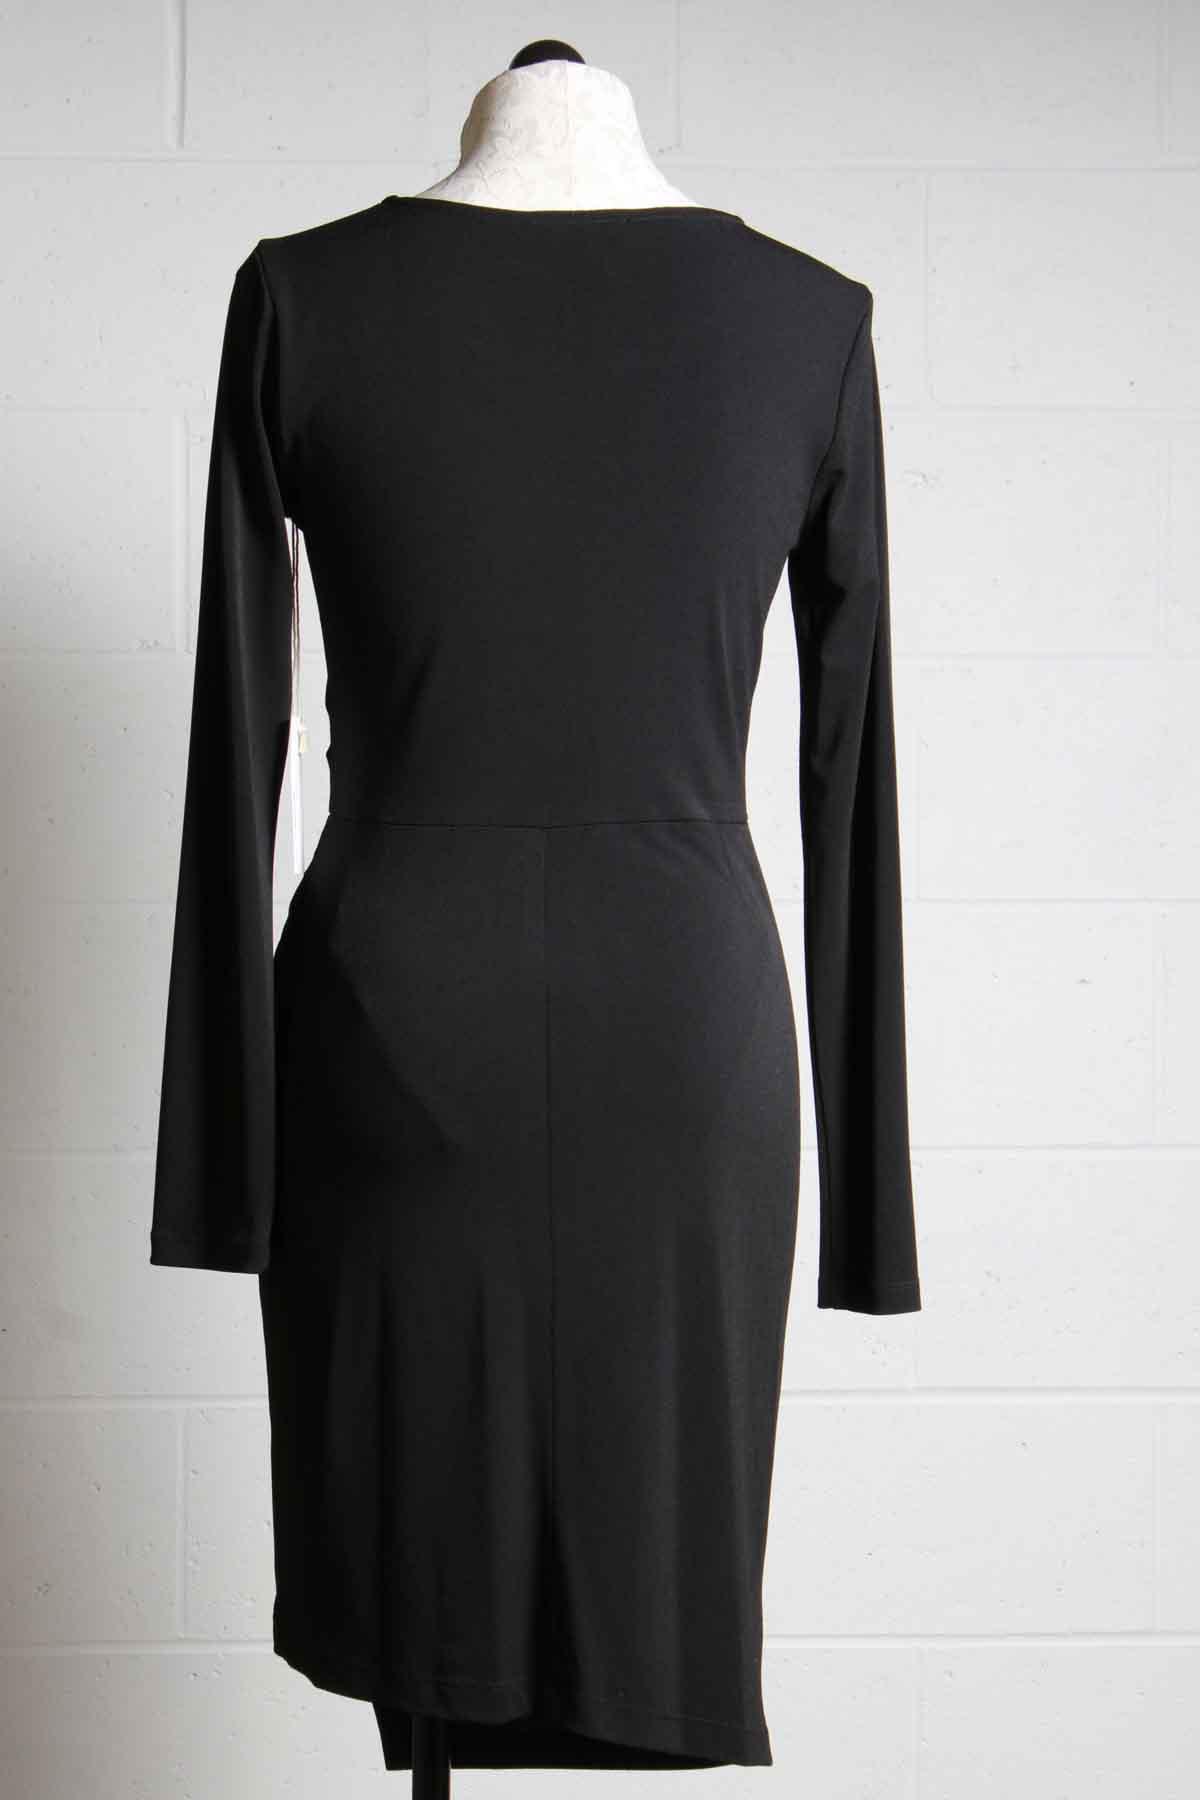 back view of Draped side Crepe dress in black by Fifteen Twenty